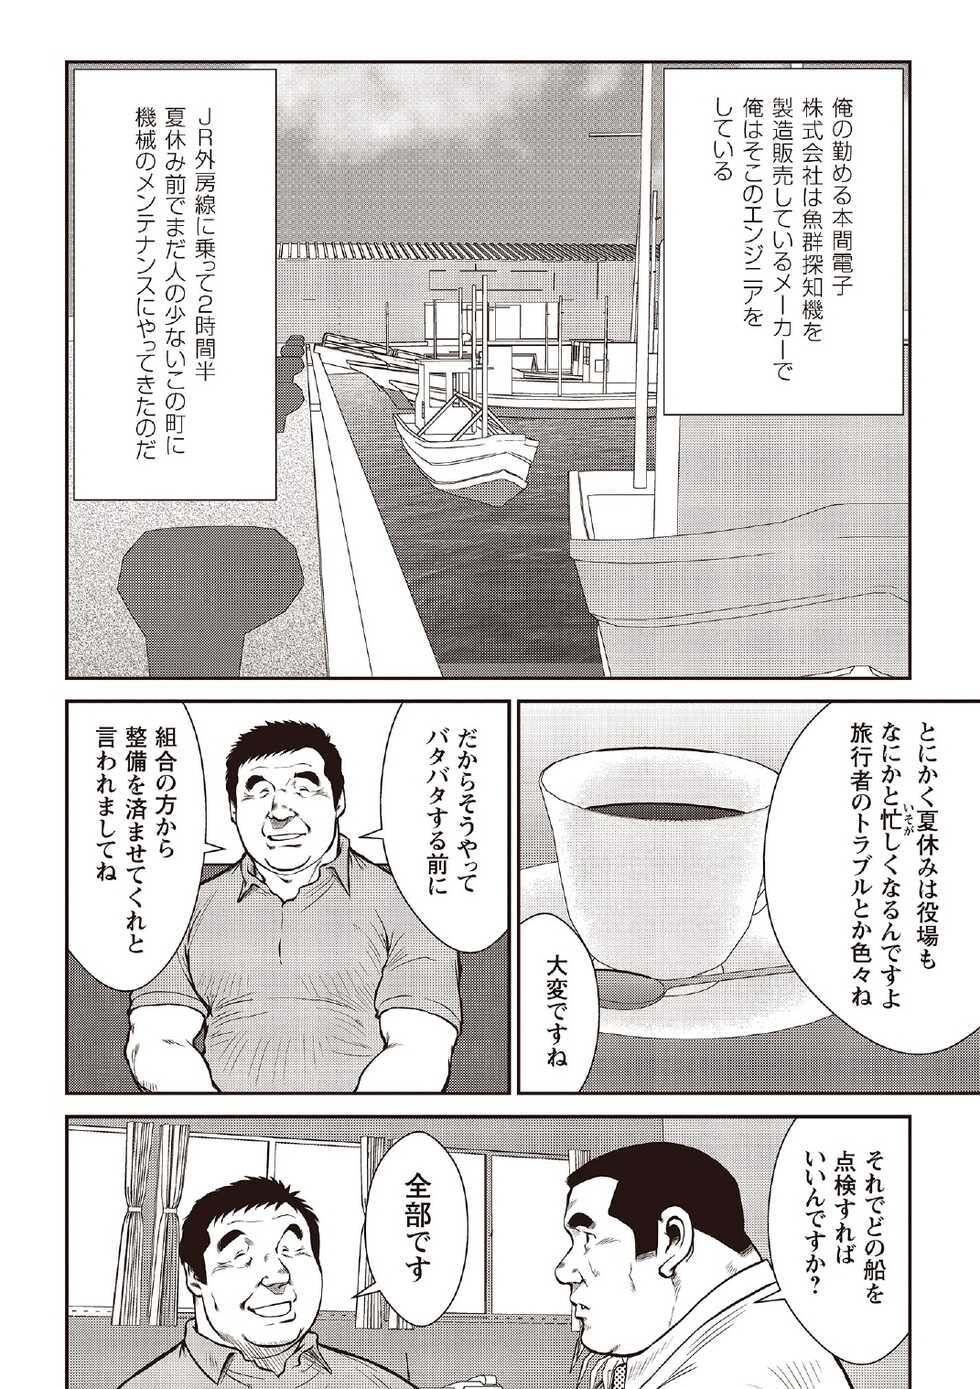 [Ebisubashi Seizou] Ebisubashi Seizou Tanpen Manga Shuu 2 Fuuun! Danshi Ryou [Bunsatsuban] PART 2 Bousou Hantou Taifuu Zensen Ch. 1 + Ch. 2 [Digital] - Page 6